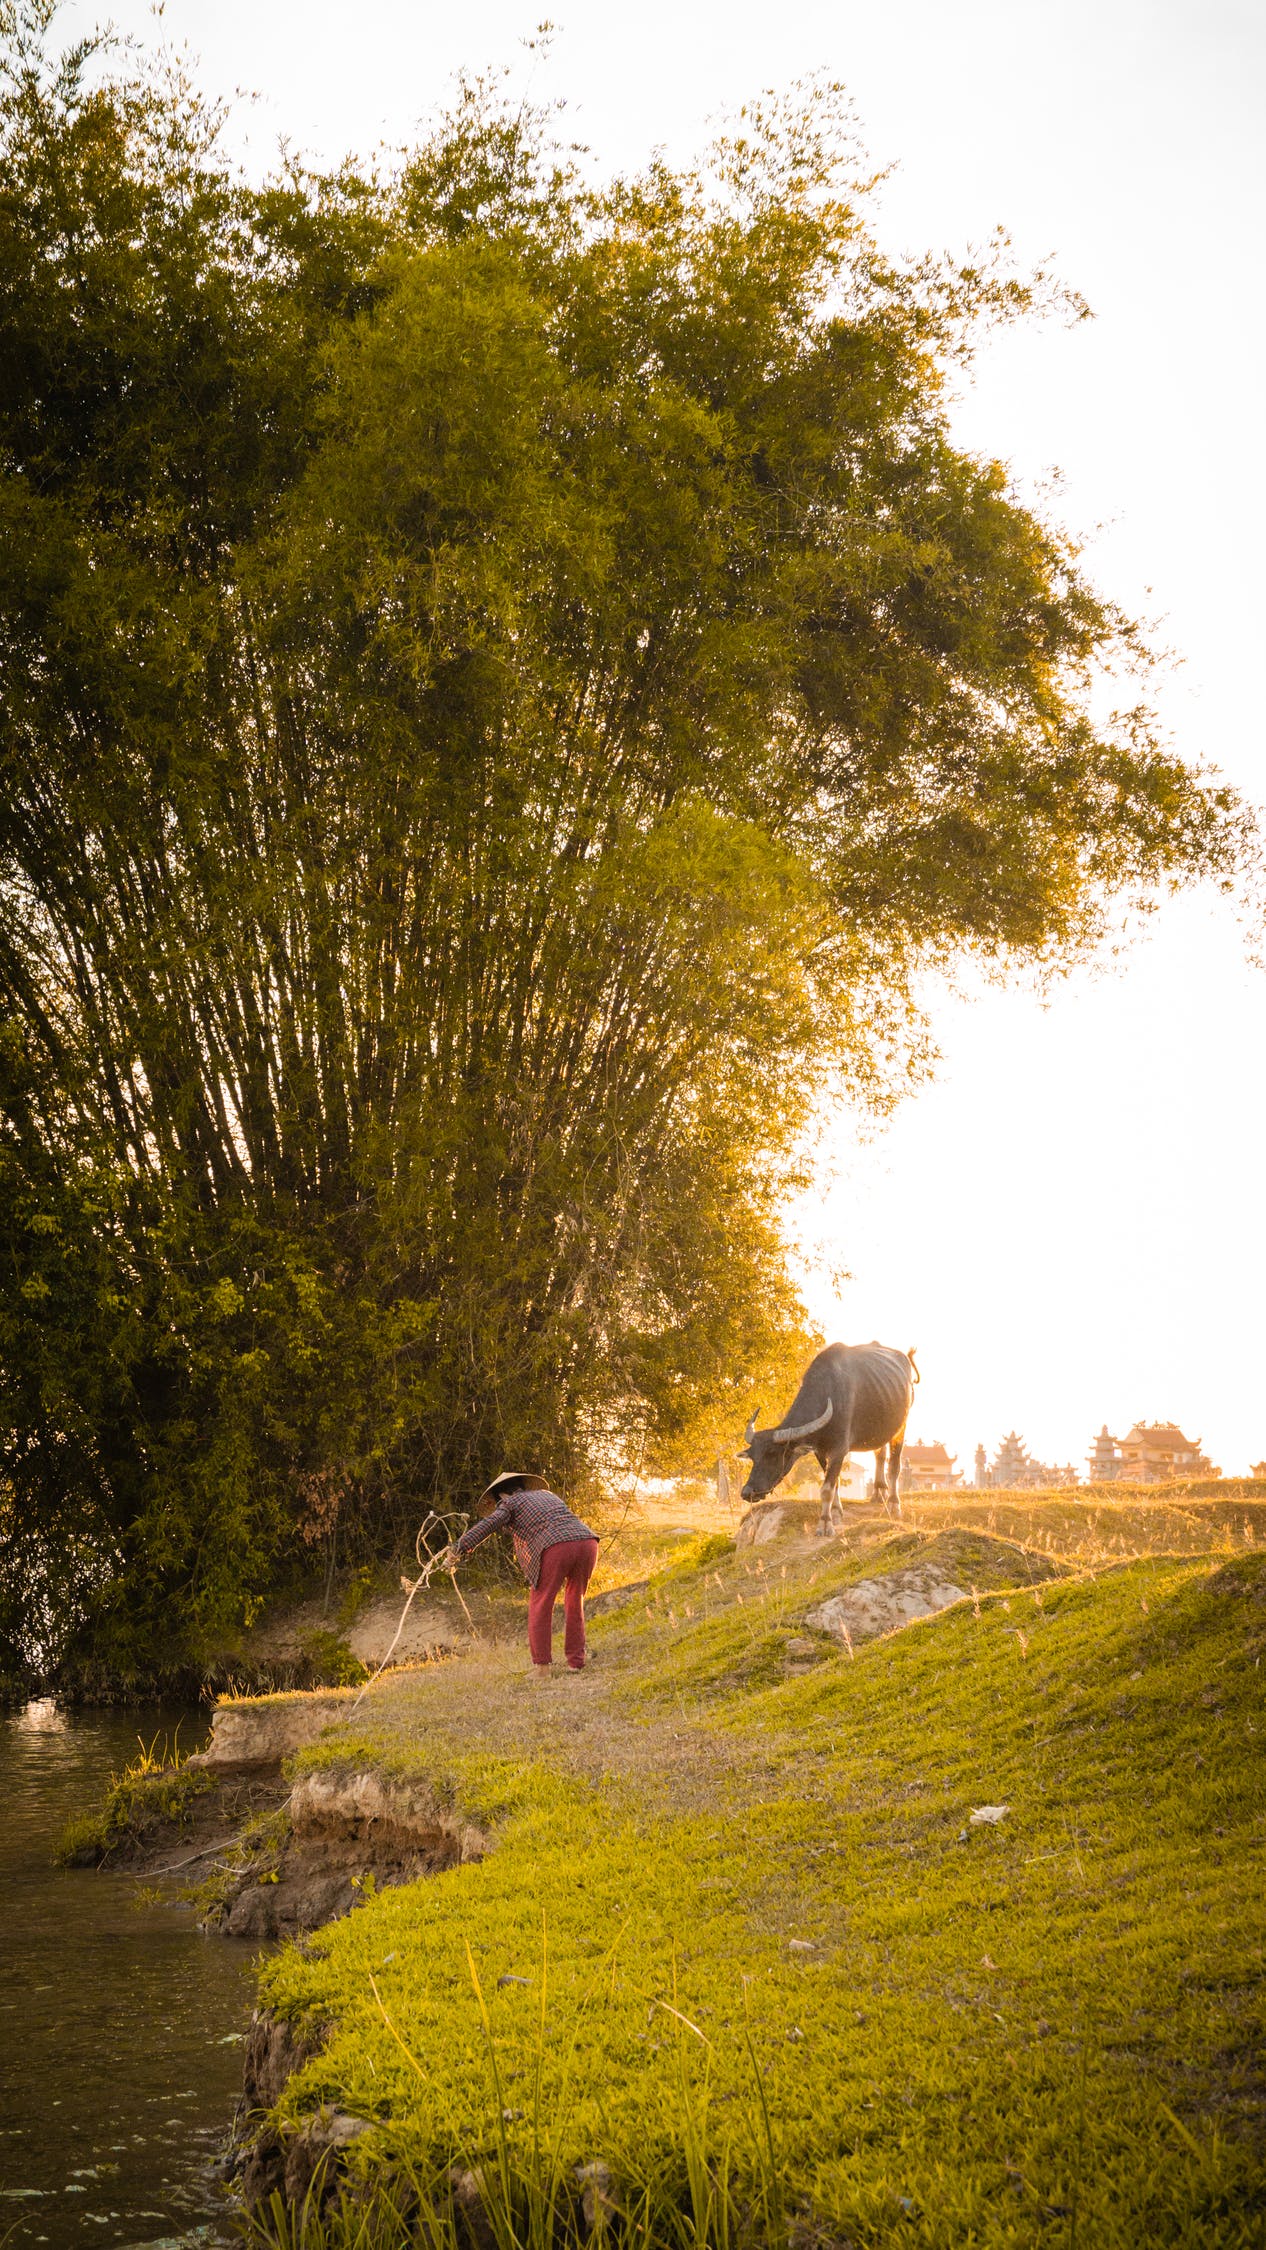 Hình ảnh làng quê đẹp: Với những hình ảnh làng quê đẹp, bạn sẽ cảm nhận được vẻ đẹp tự nhiên của đồng quê Việt Nam. Đó là cảnh sắc yên bình, những kiến trúc và những con người sống cuộc sống giản dị nhưng đầy tình cảm.